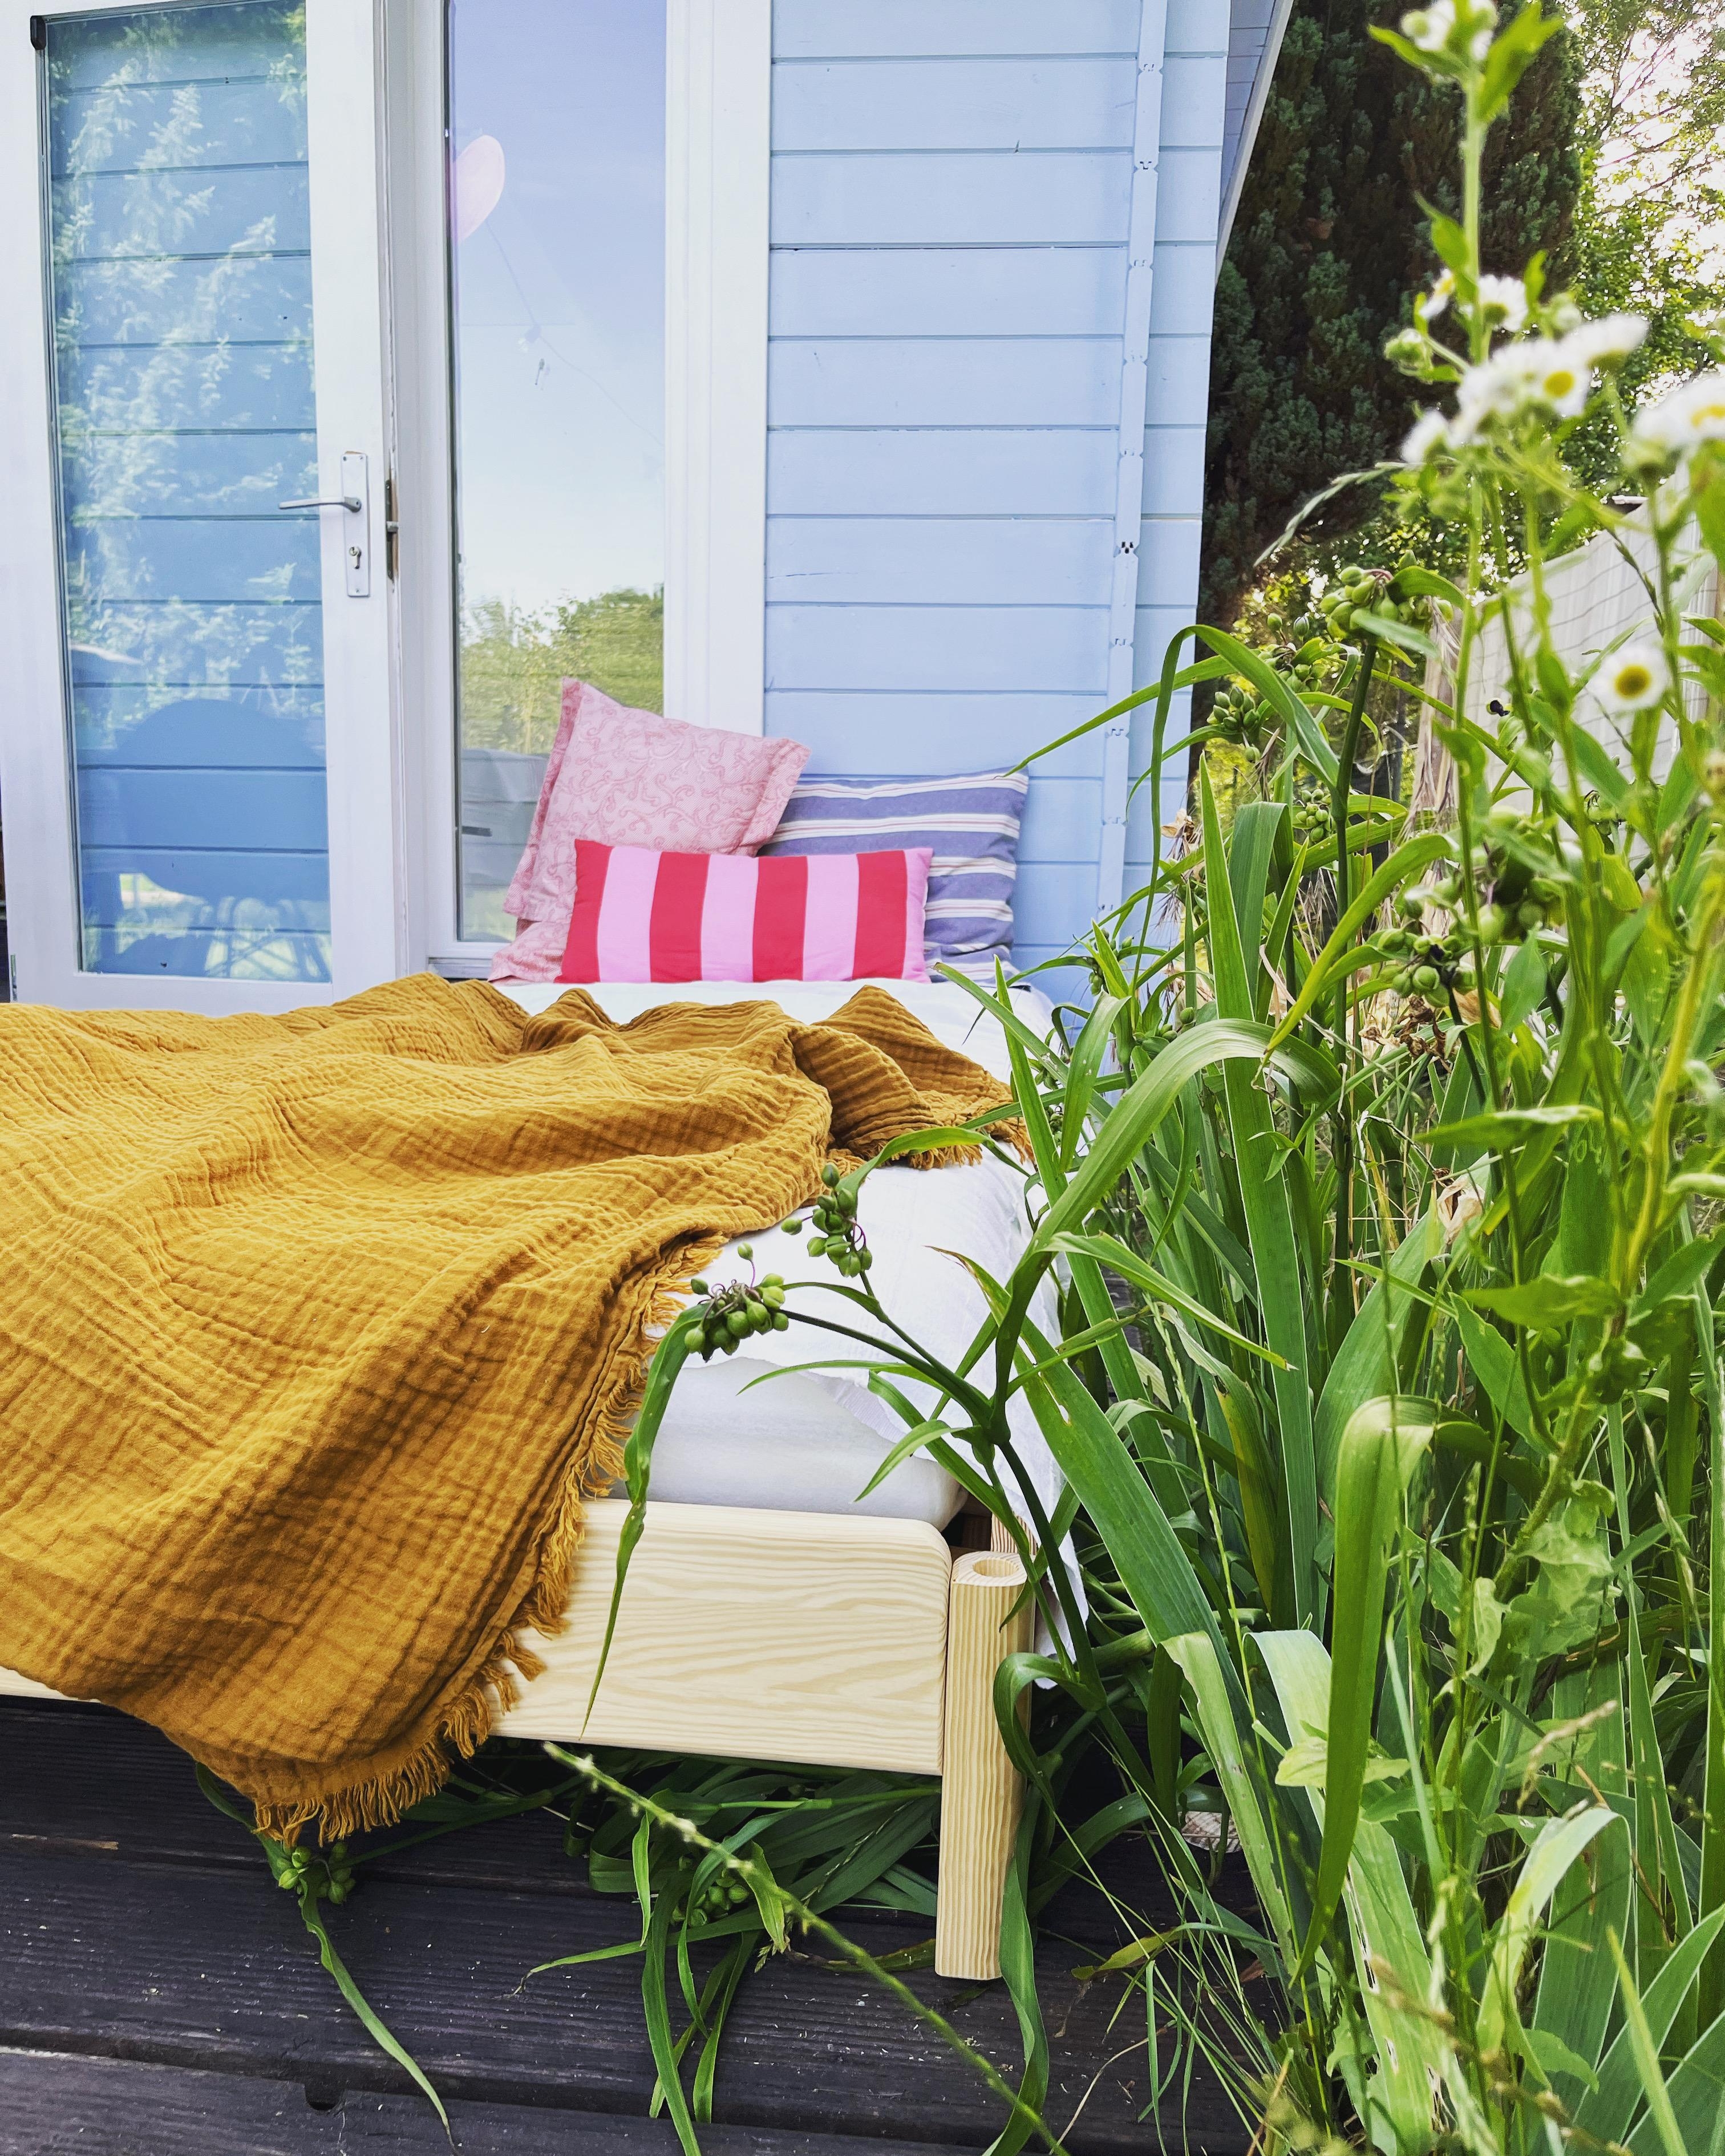 Wenn es zu warm wird, kommt das Bett einfach in den Garten 
#summer #gartenliebe #sommerimgarten #sommerzuhause